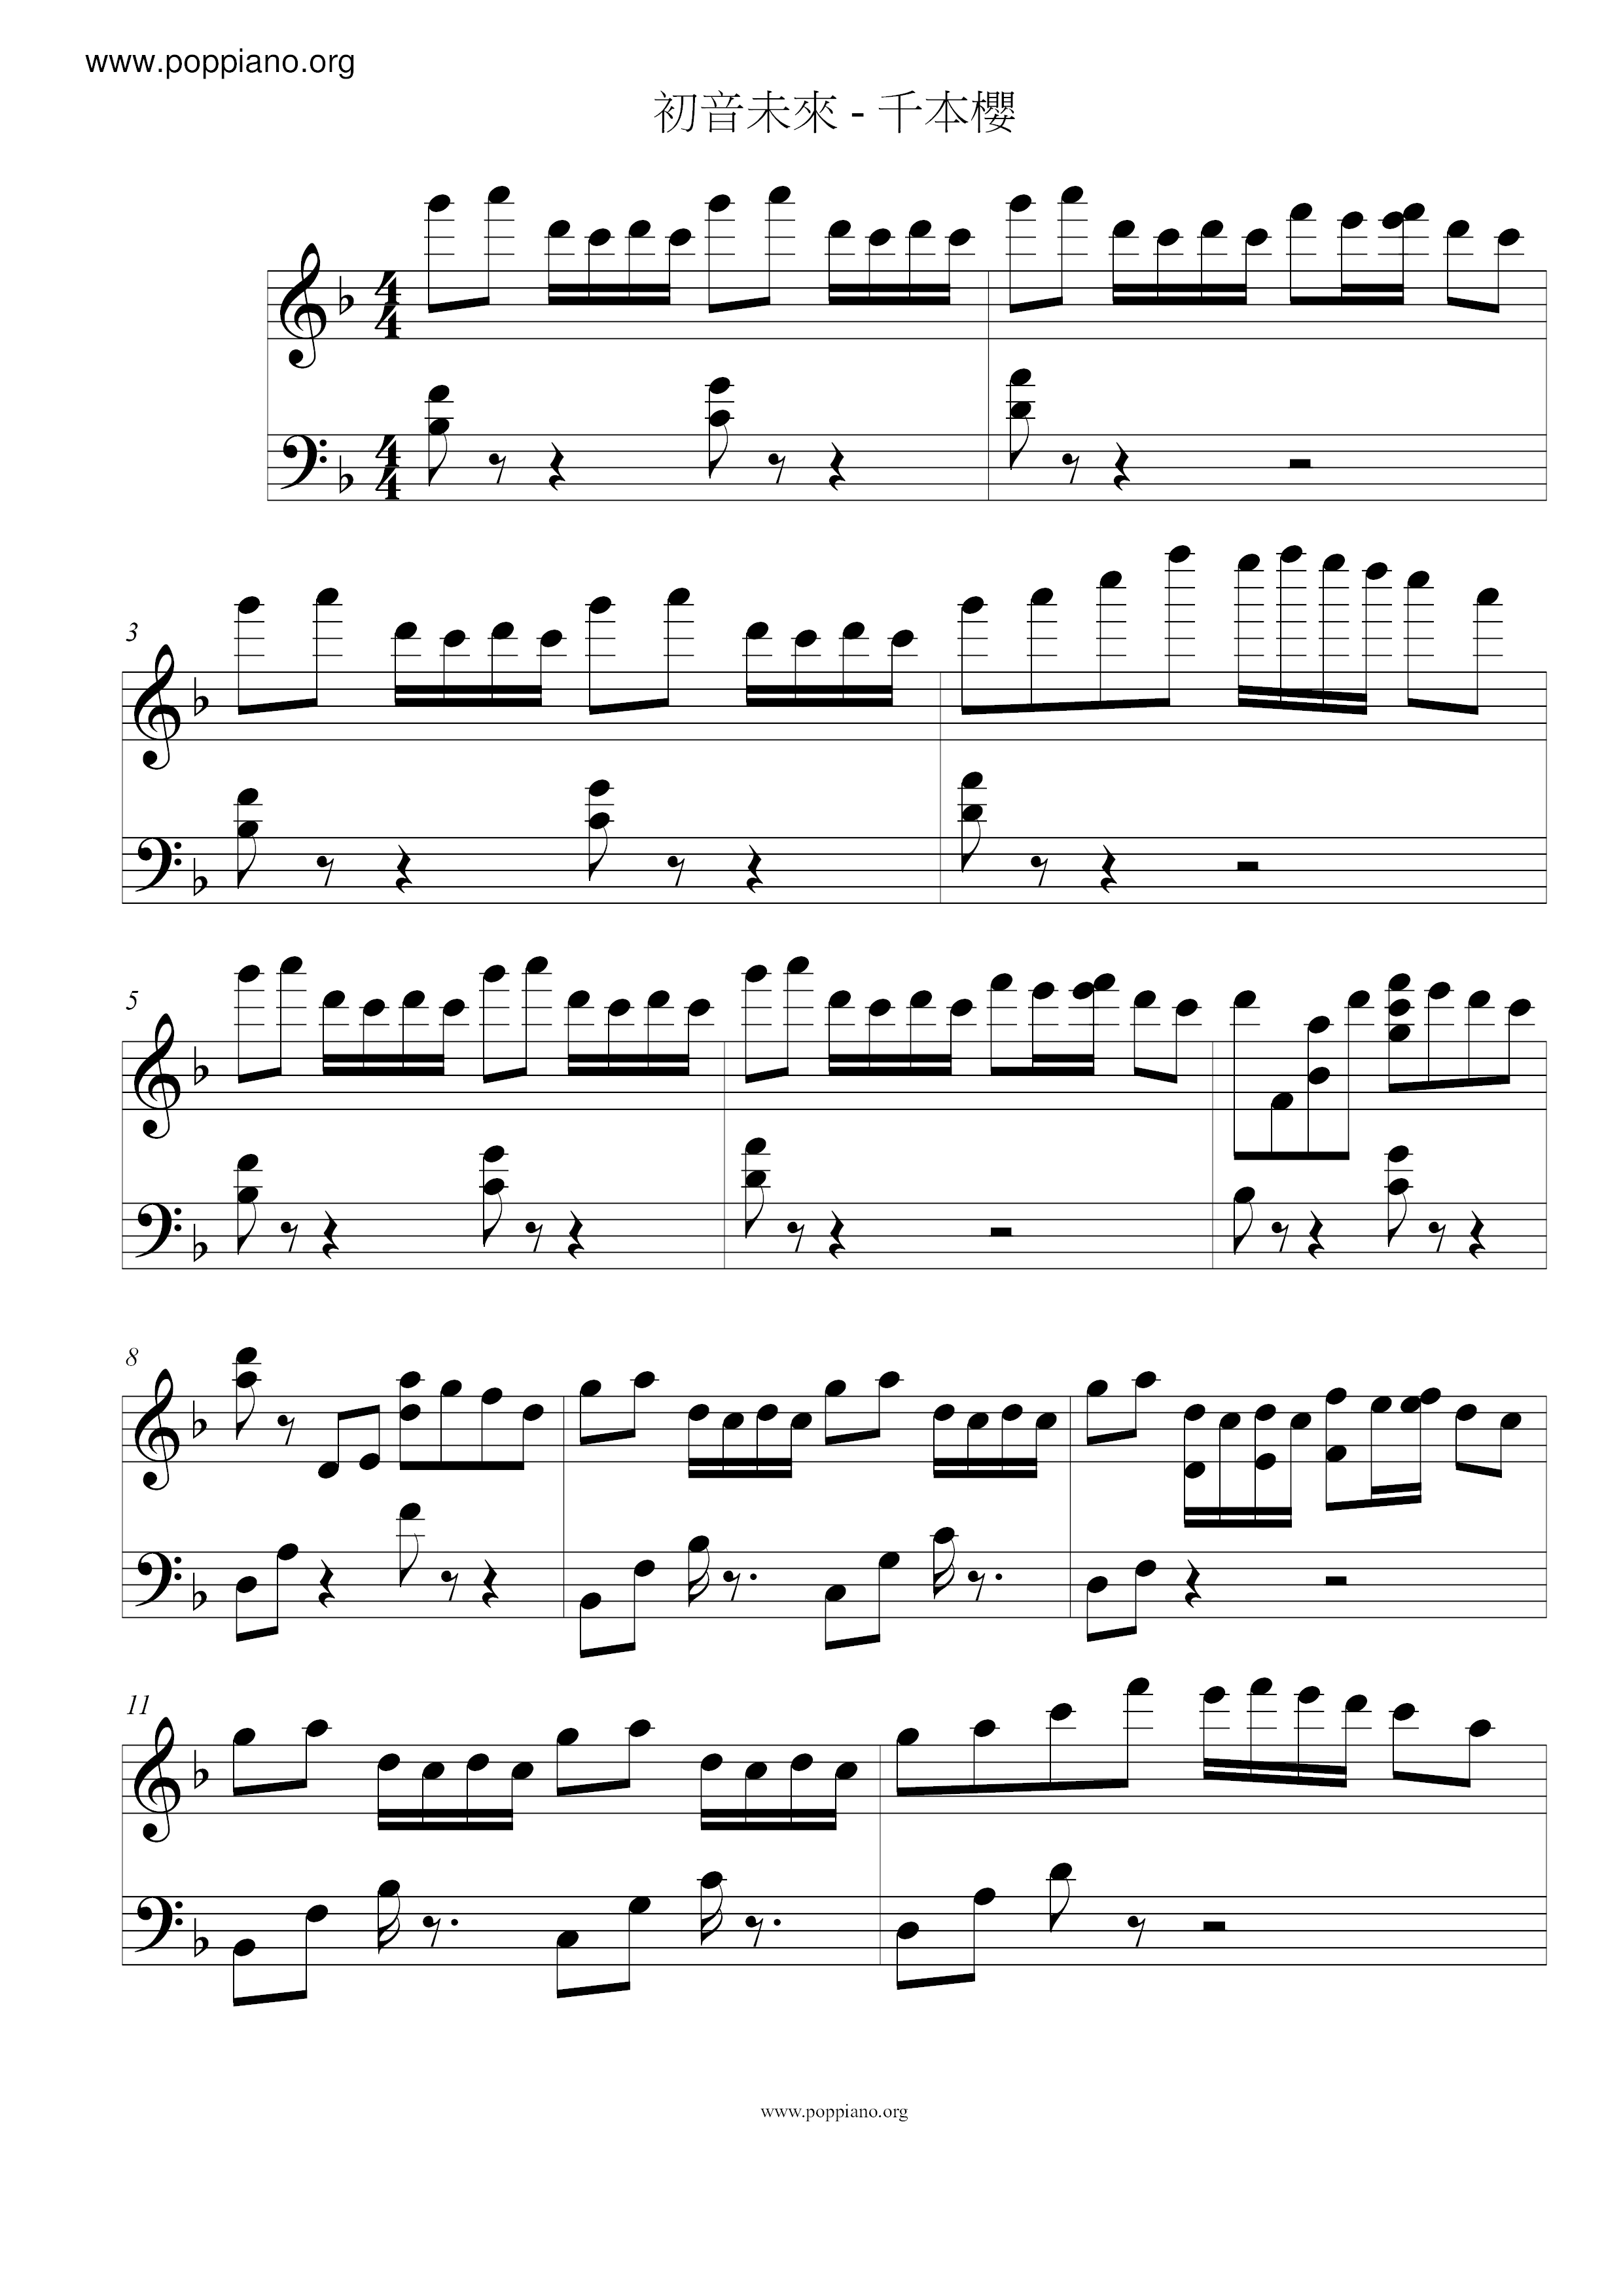 Chimoto Sakura / Senbonzakura Score